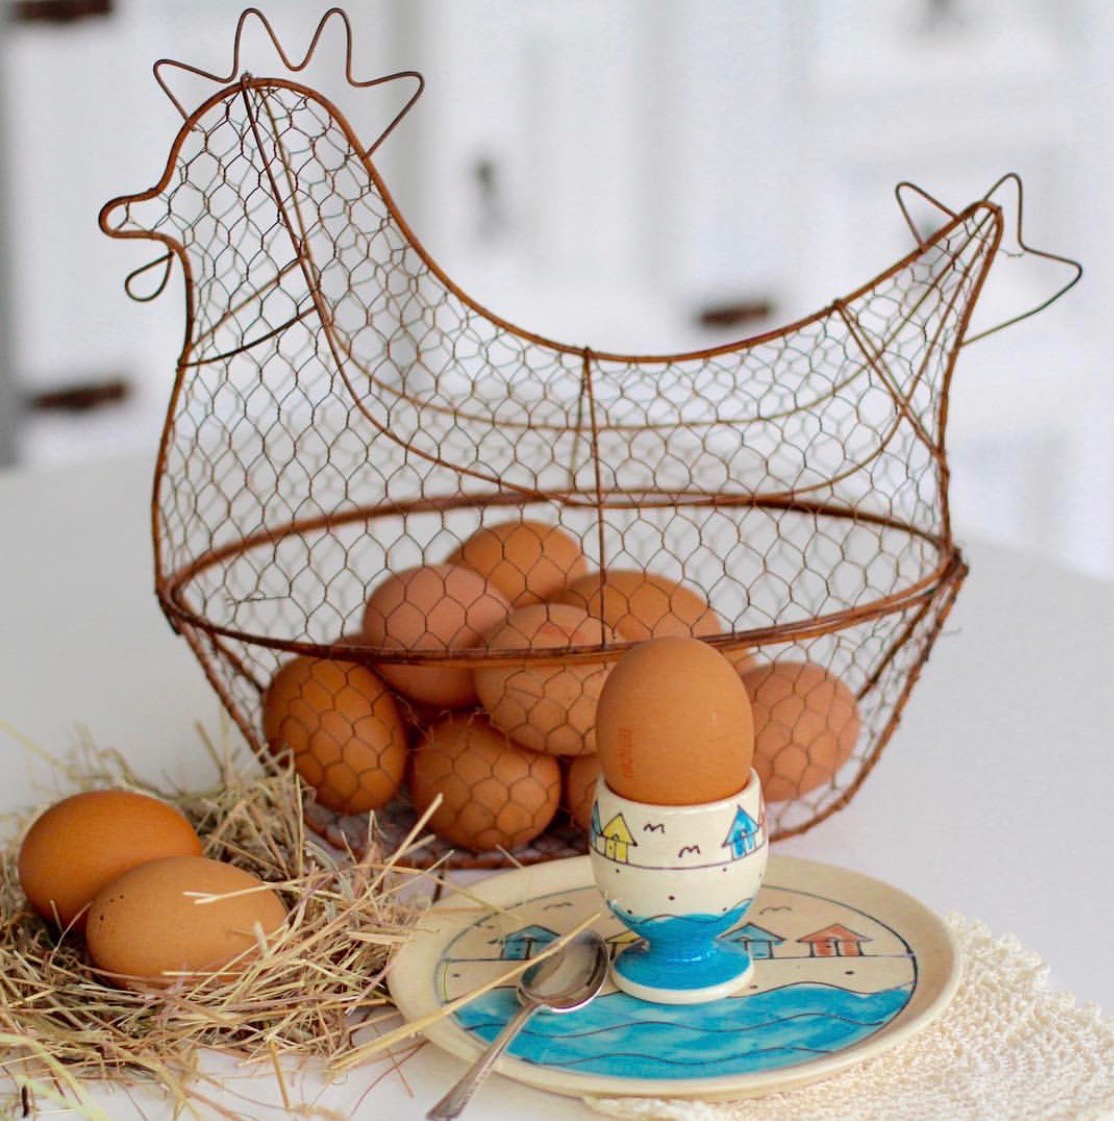 Eggs in egg basket